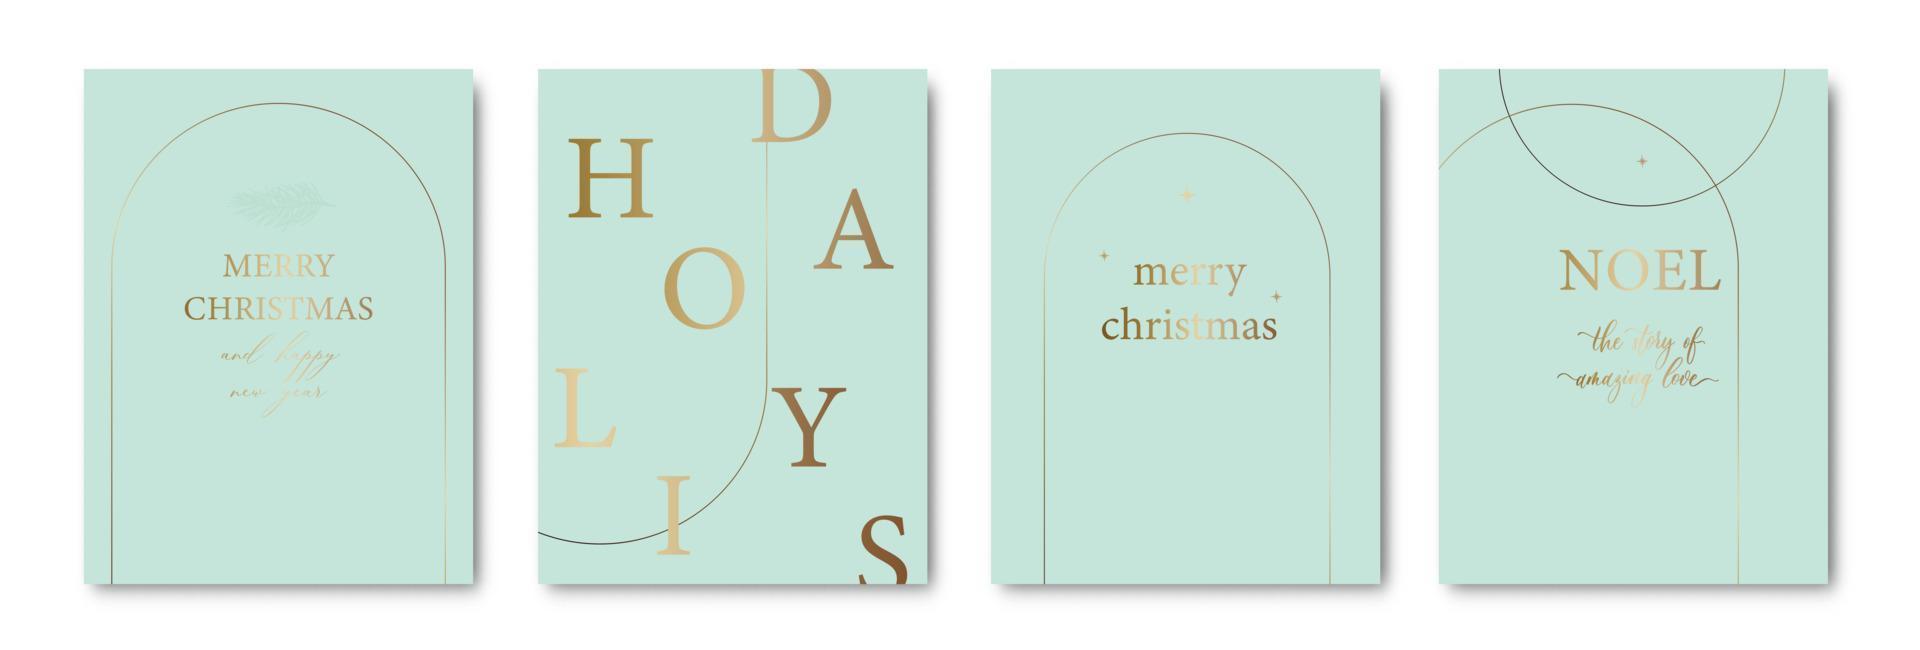 conjunto de elegantes tarjetas de feliz navidad y año nuevo con corona de pino, muérdago, plantas de invierno, ilustración de diseño para saludos, invitaciones, volantes, folletos, portadas. vector